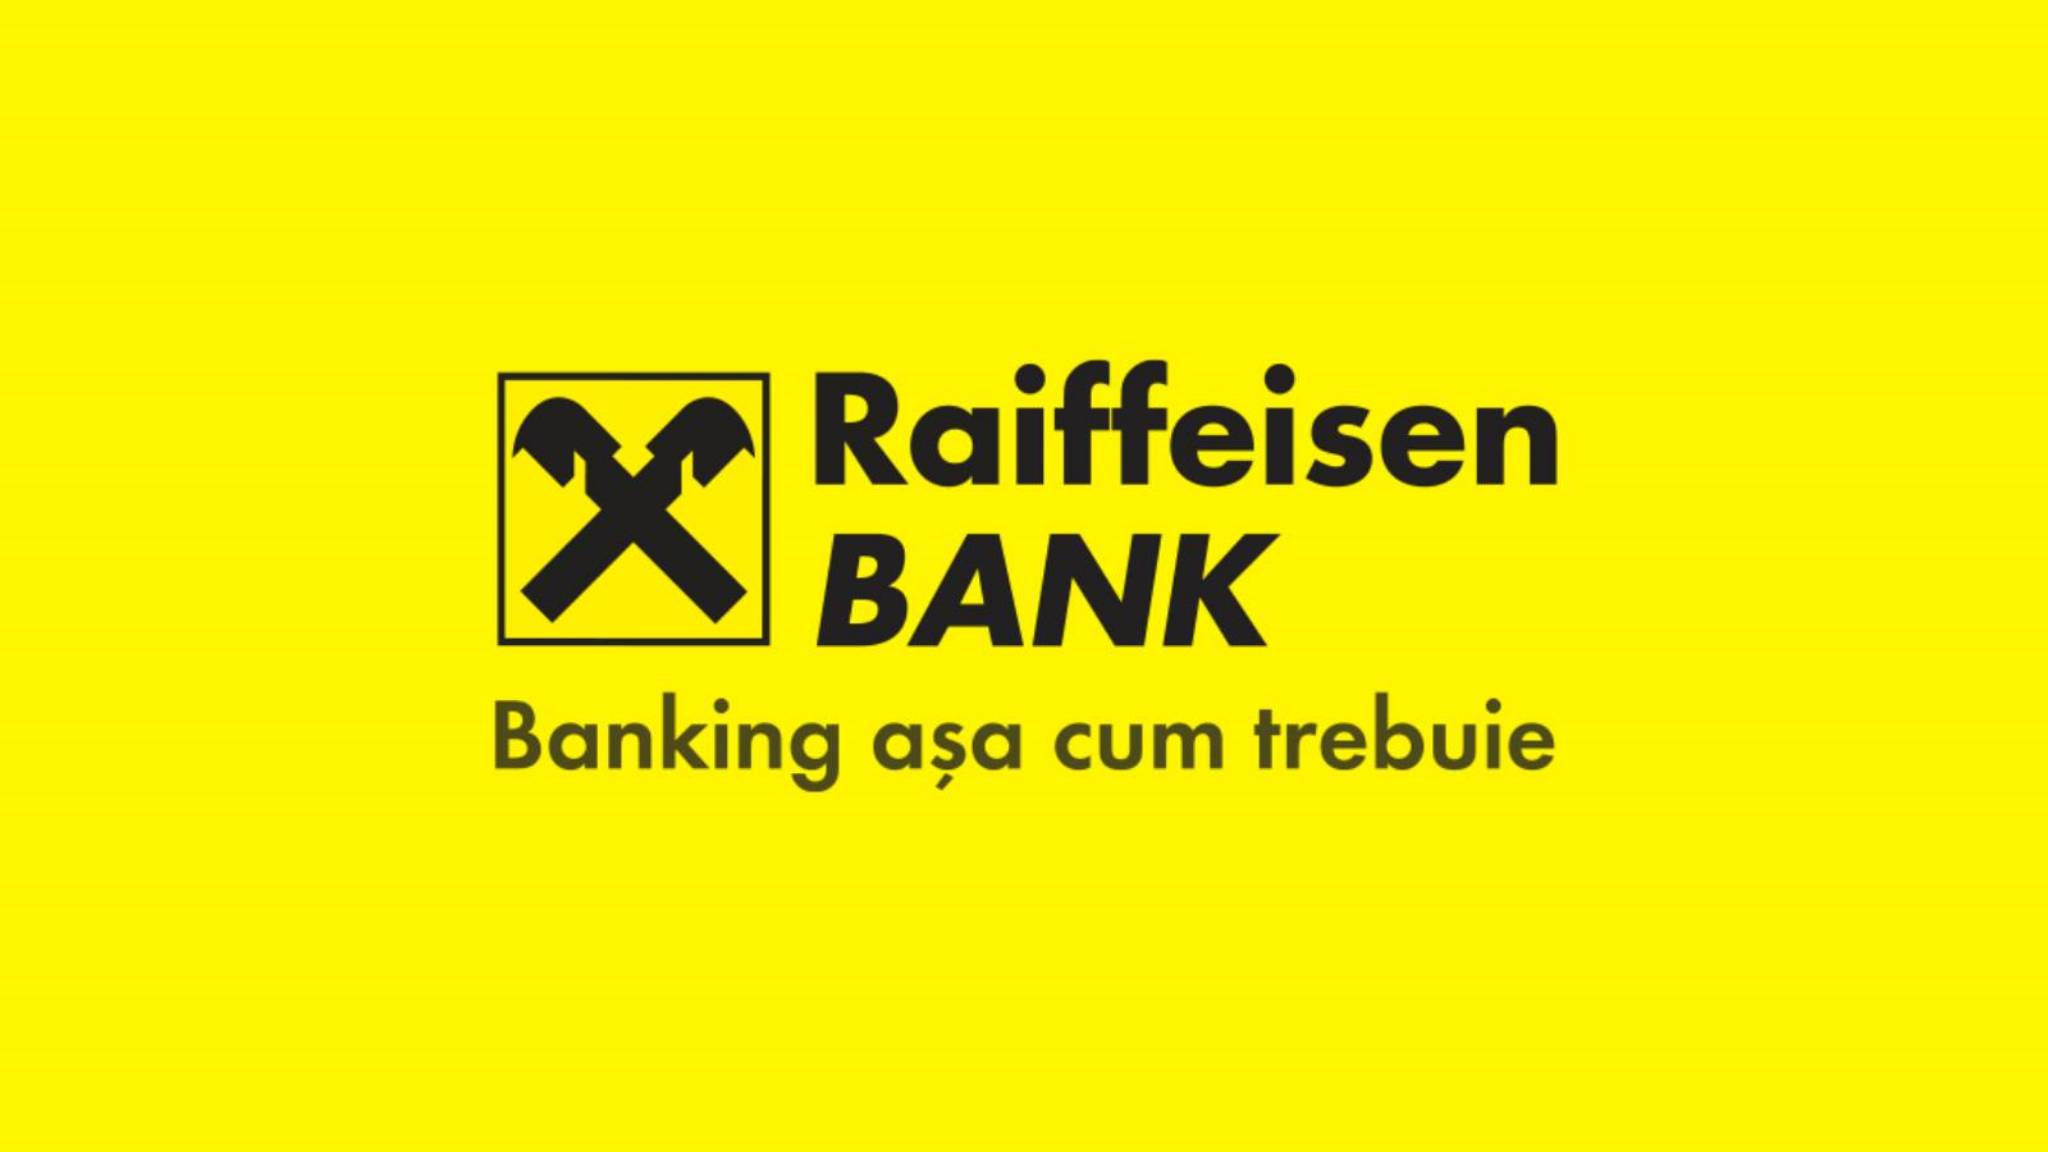 Raiffeisen Bank officiella förändringar SISTA MINUTEN Beslut OBS Rumänska kunder